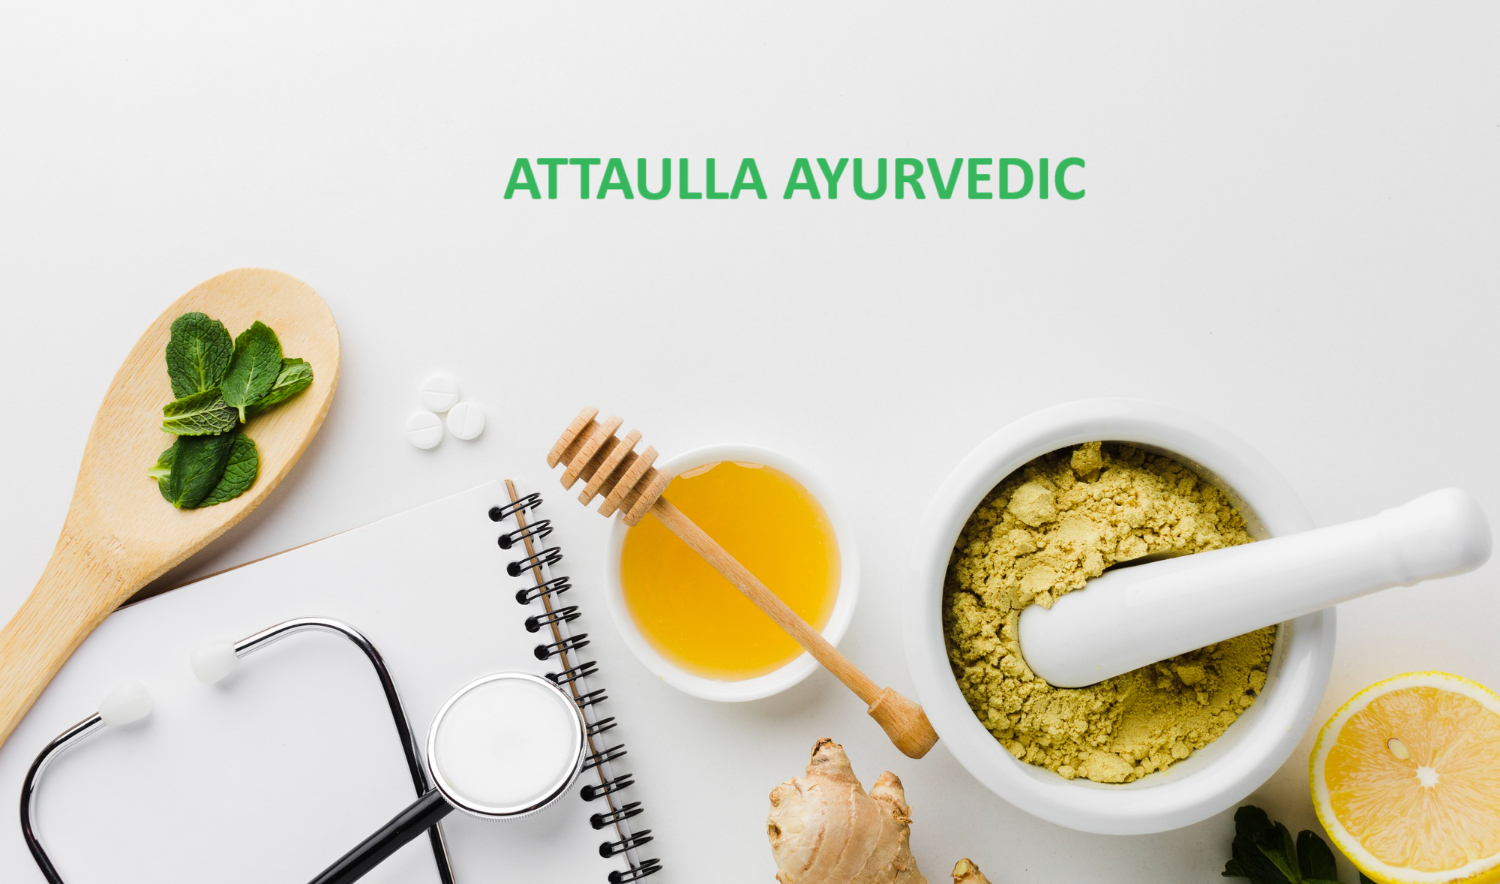 Ataulla Ayurvedic promo